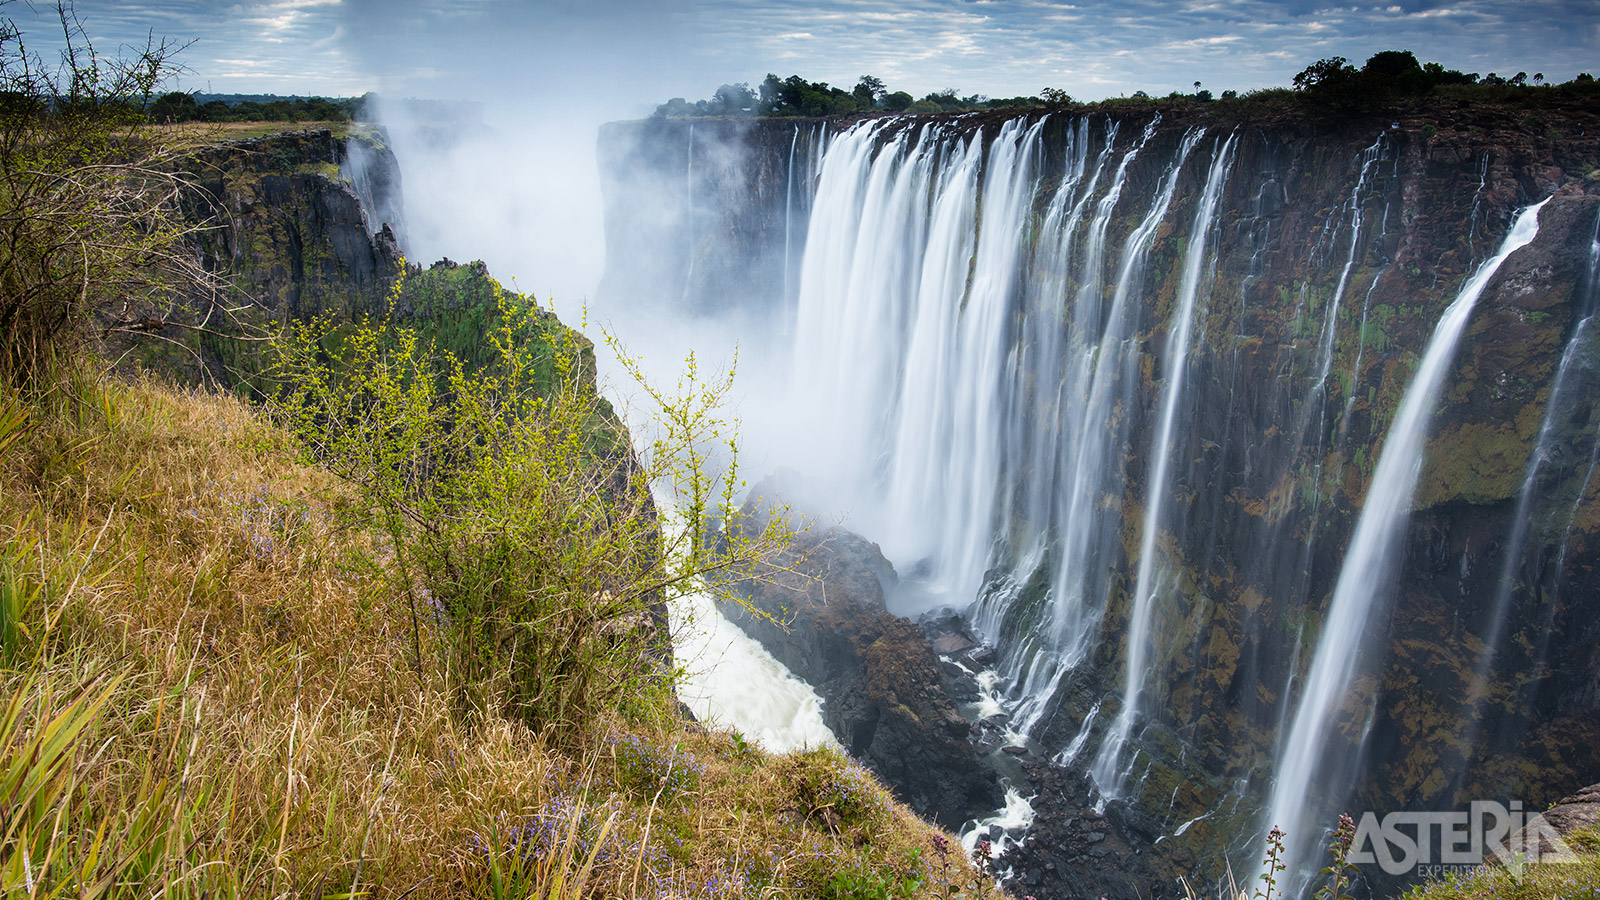 De imposante Victoria-watervallen behoren terecht tot de meest iconische en meest bekende watervallen ter wereld